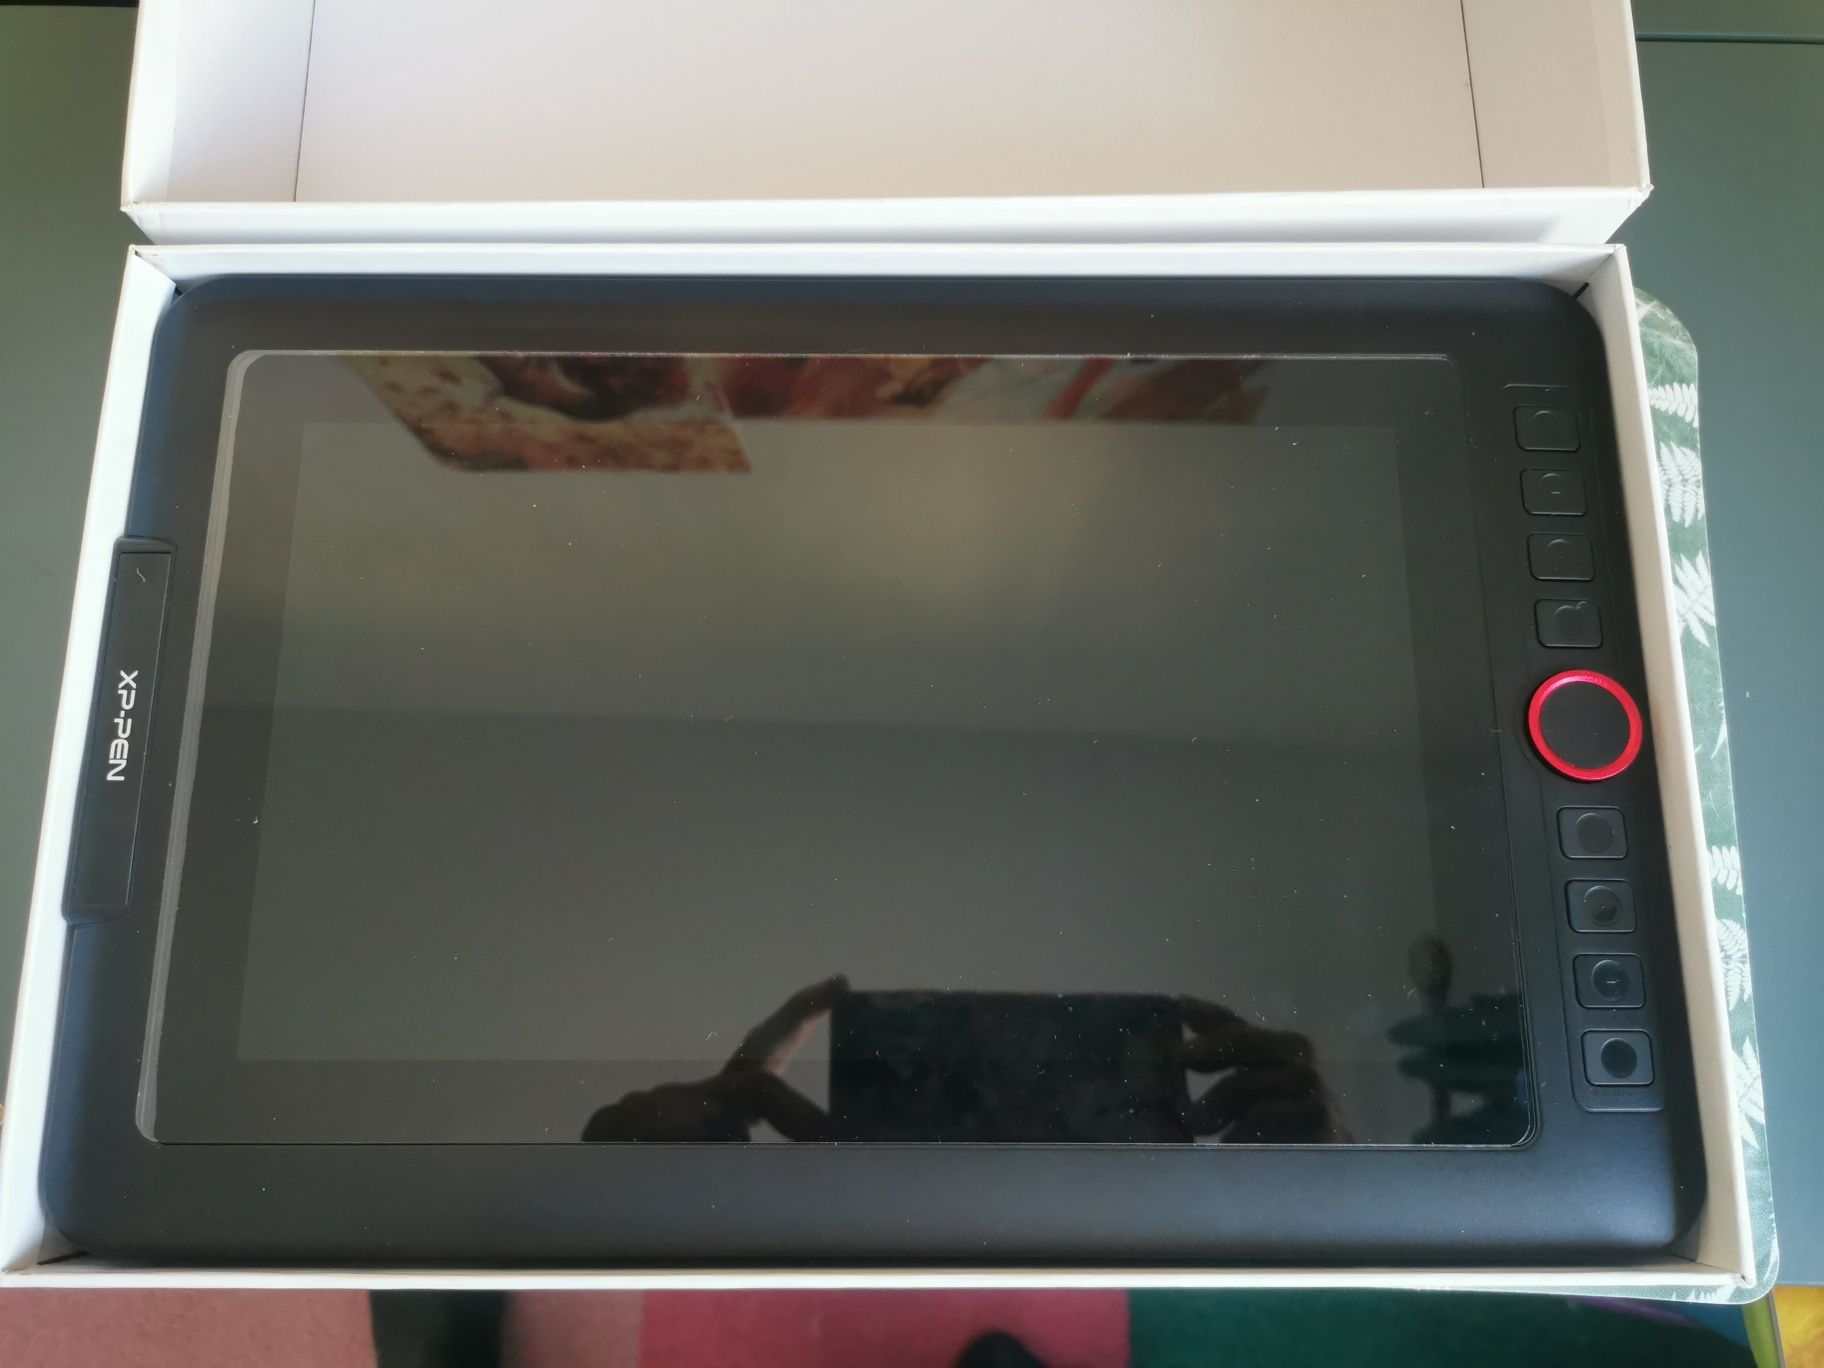 Tableta grafica XP-PEN Artist 12 Pro schimb cu Dyson sau Miele